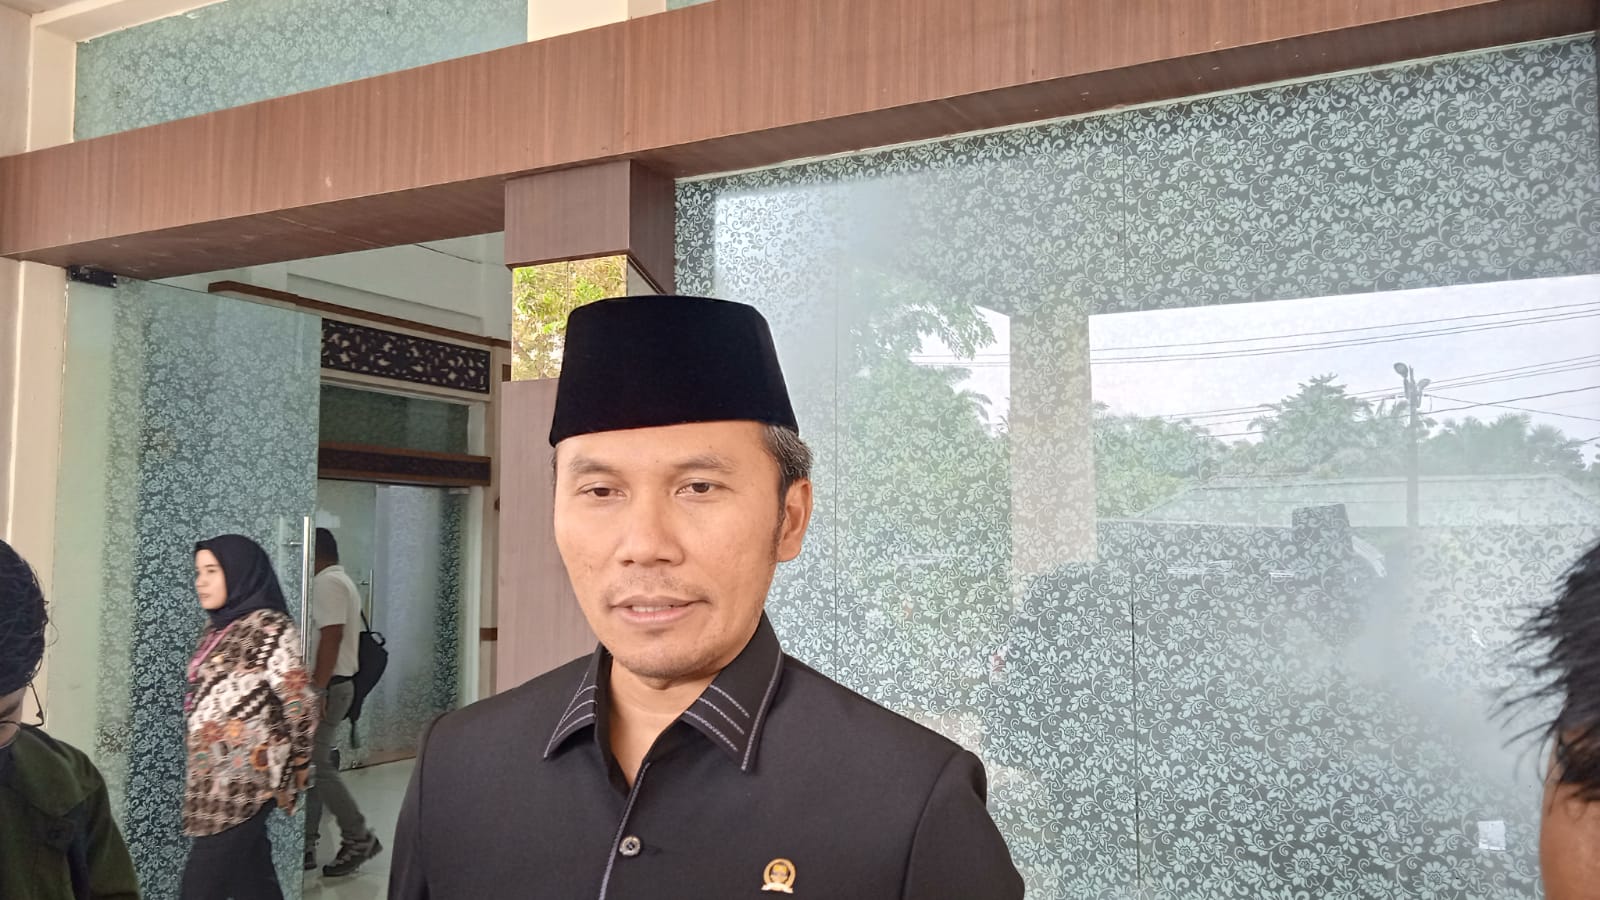 Ketua DPRD Jambi Ingatkan Masyarakat Tidak Buang Puntung Rokok Sembarangan, Cegah Karhutla.